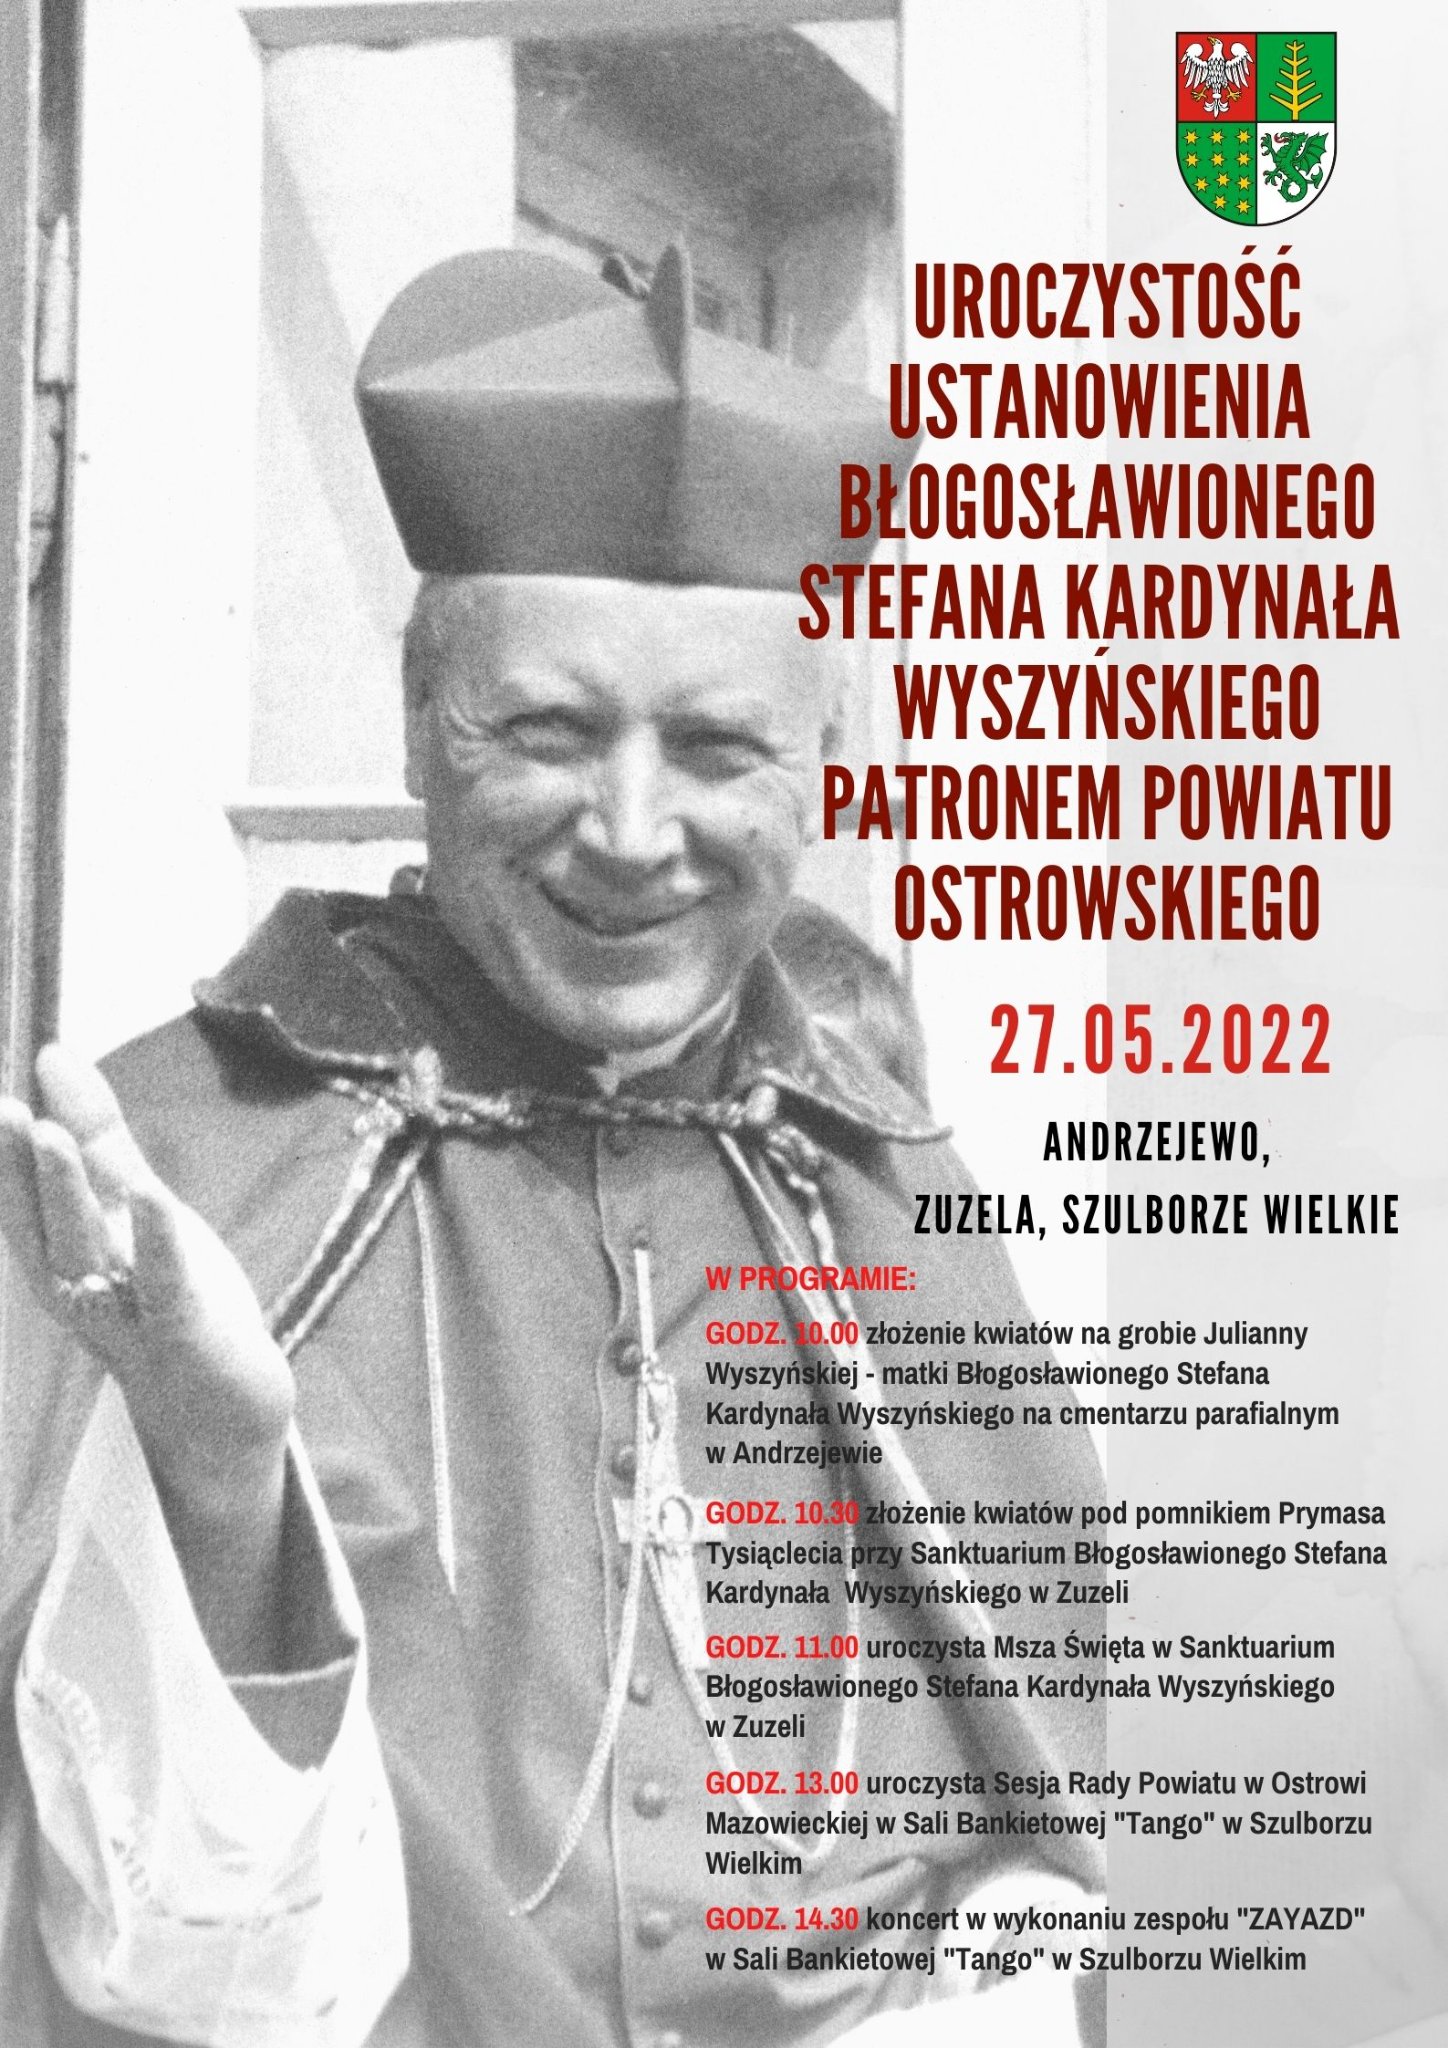  uroczystość ustanowienia Błogosławionego Stefana Kardynała Wyszyńskiego Patronem Powiatu Ostrowskiego. Uroczystość odbędzie się w dniu 27 maja 2022 r. oraz znajduje się program uroczystości